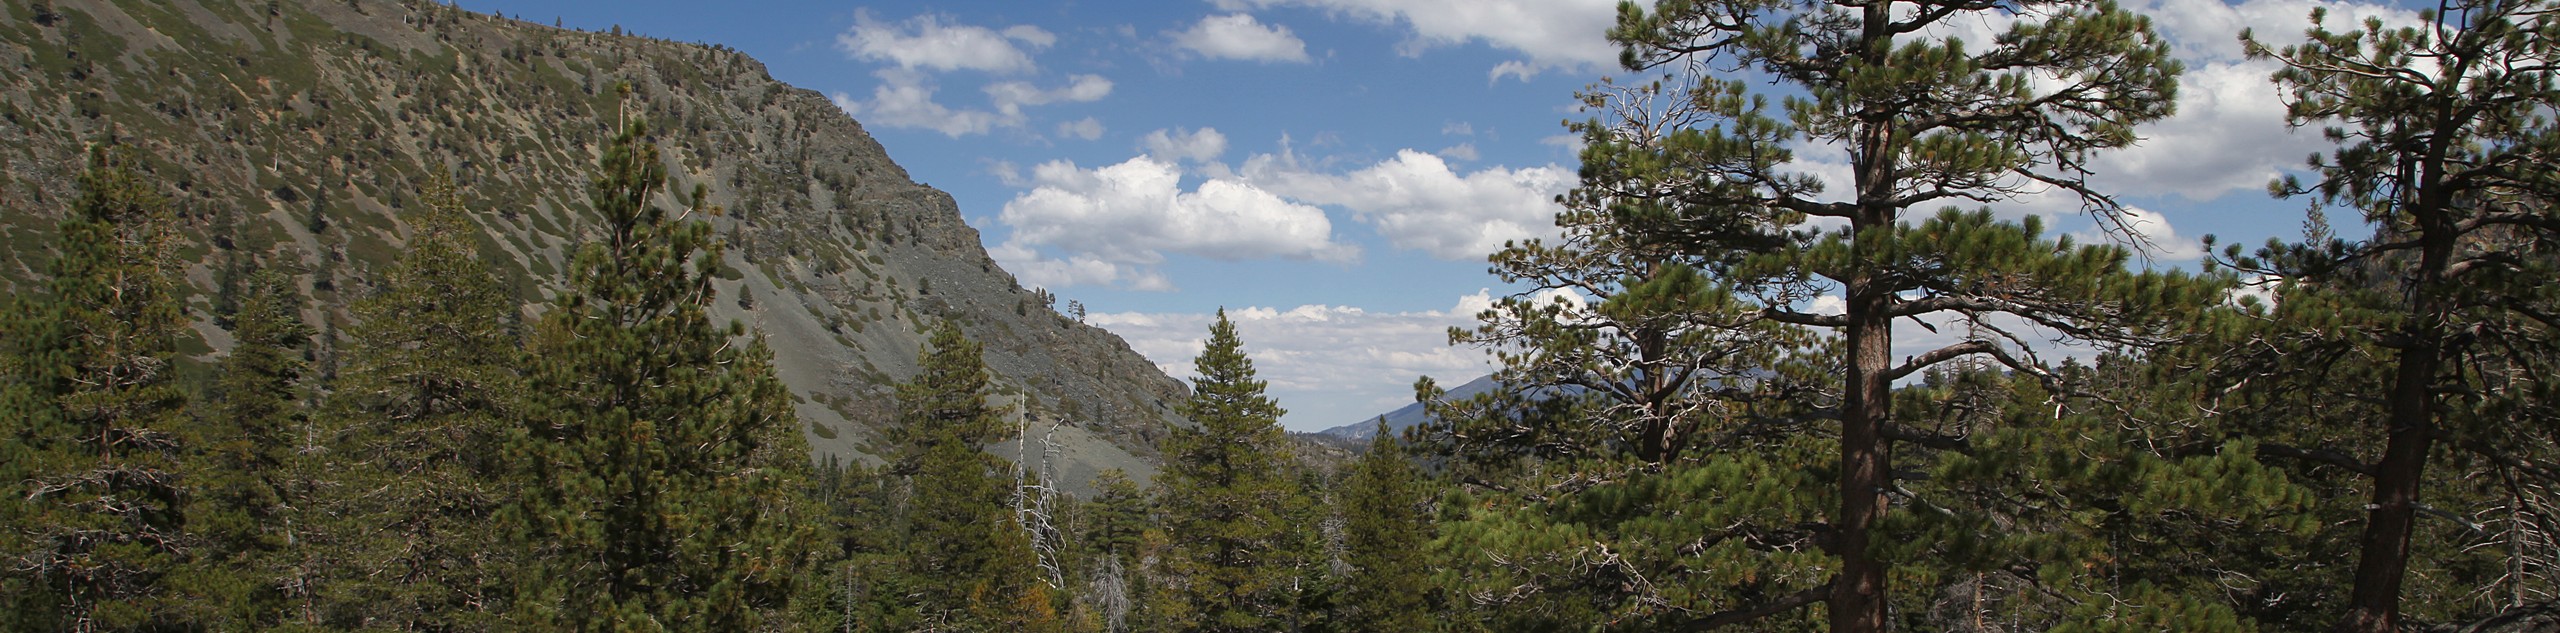 Glen Alpine Trail